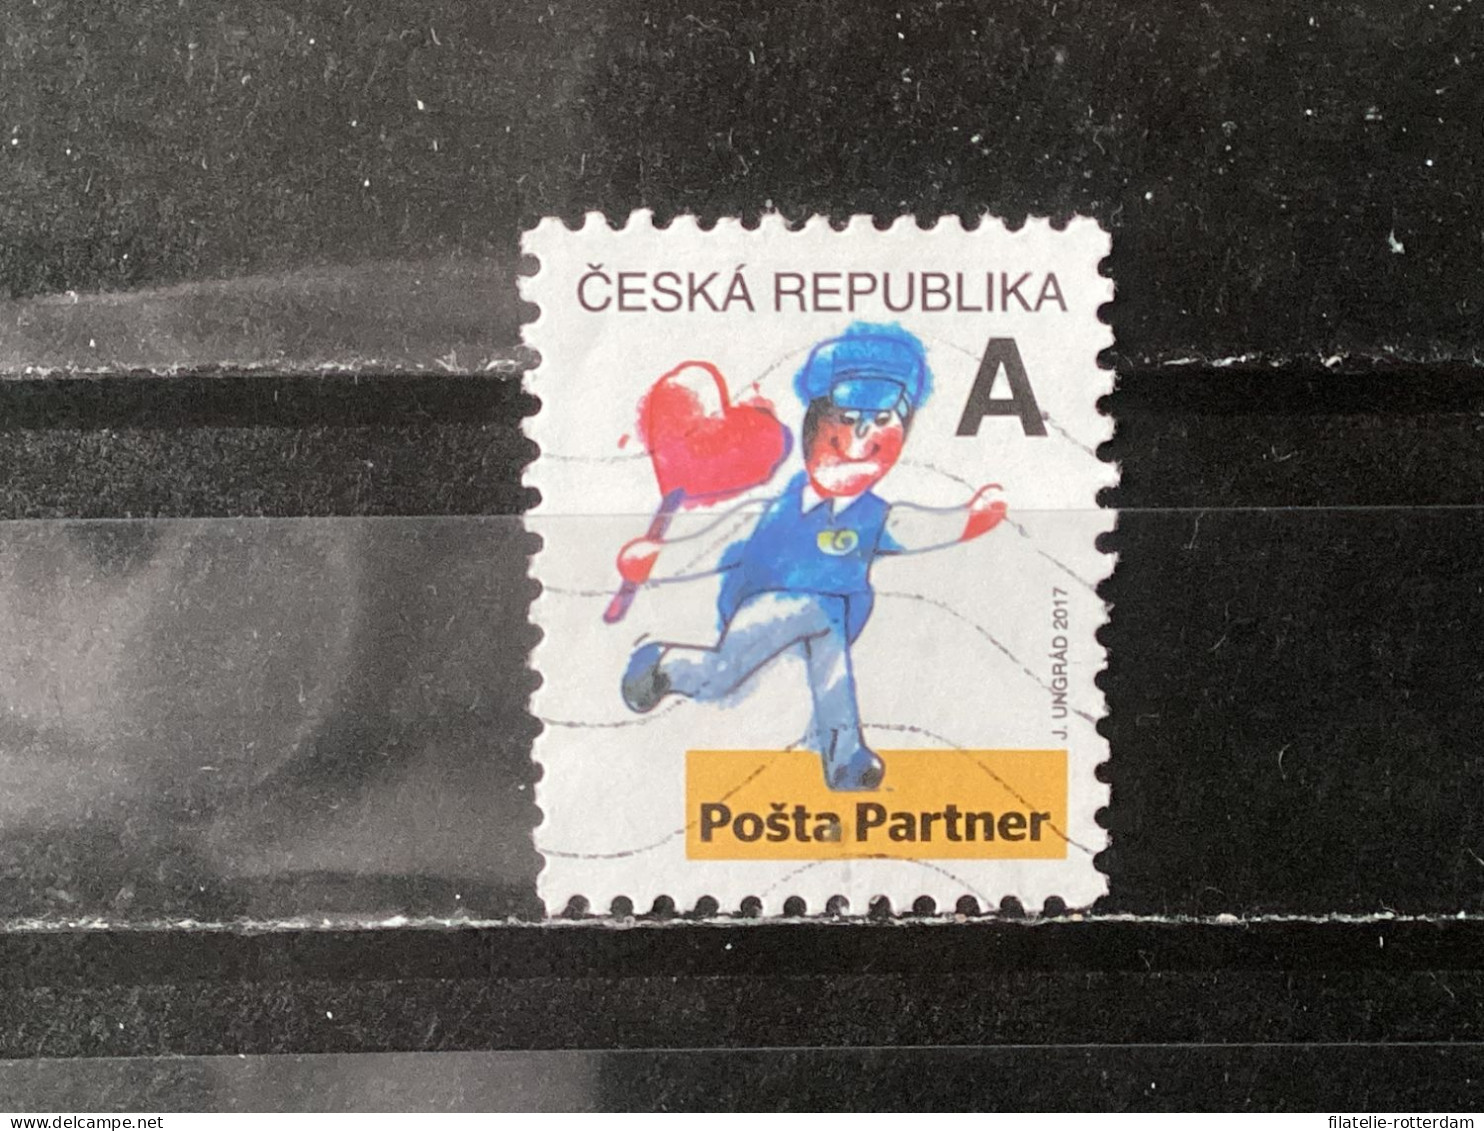 Czech Republic / Tsjechië - Partner Post Office (A) 2017 - Usati